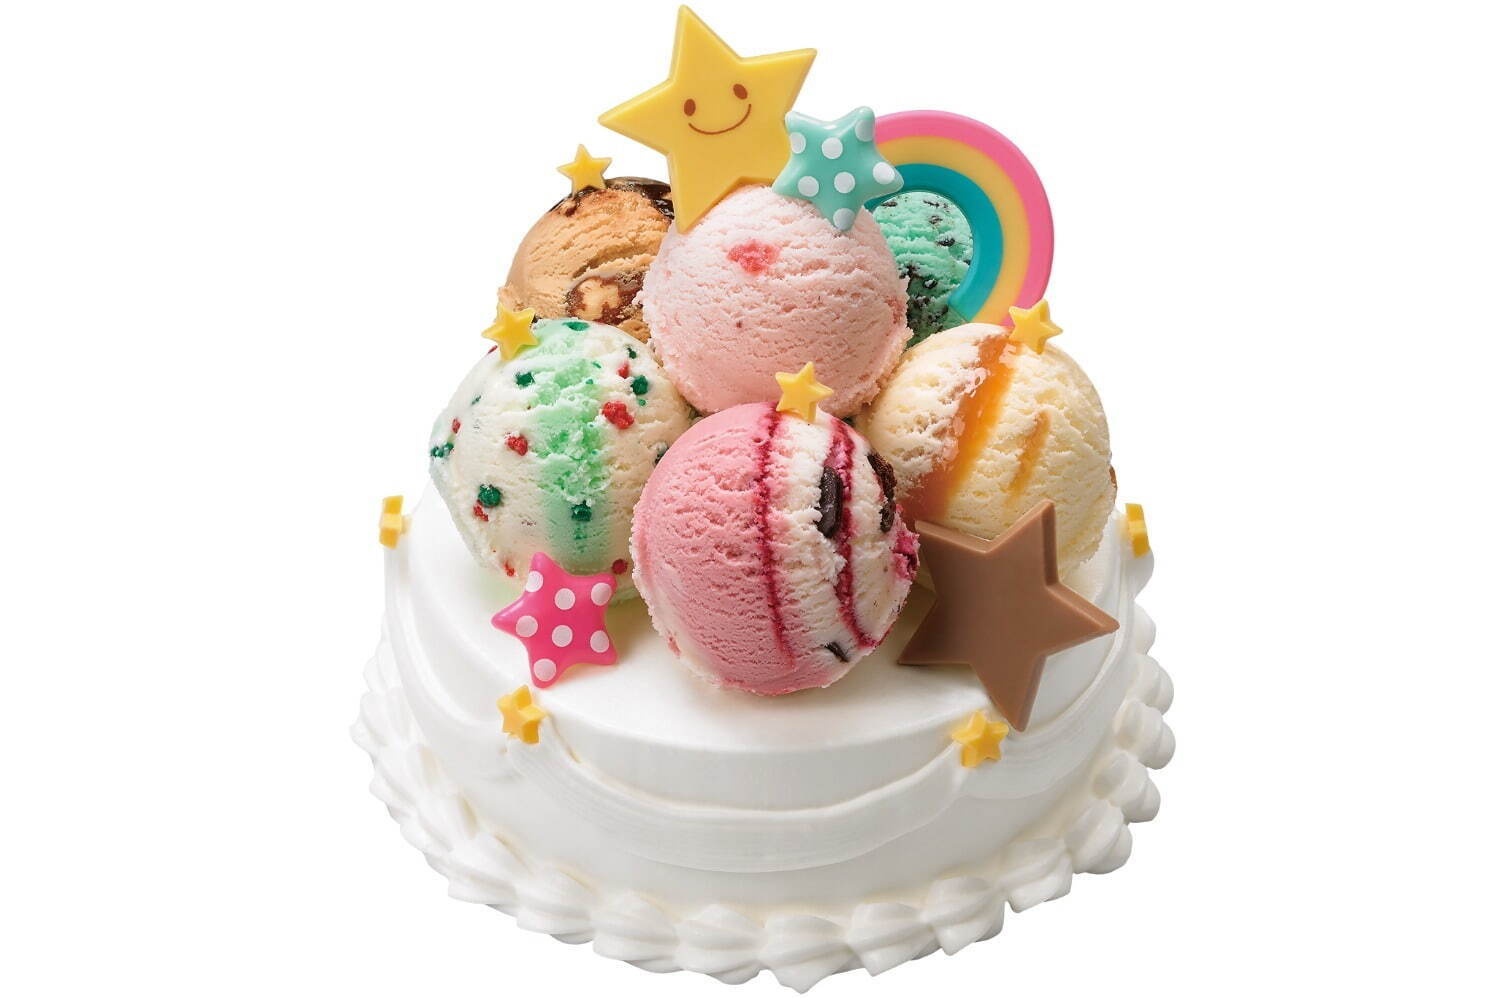 サーティワン初 フレーバーを選べる アイスクリームケーキ 星 虹チョコでデコレーションも ファッションプレス